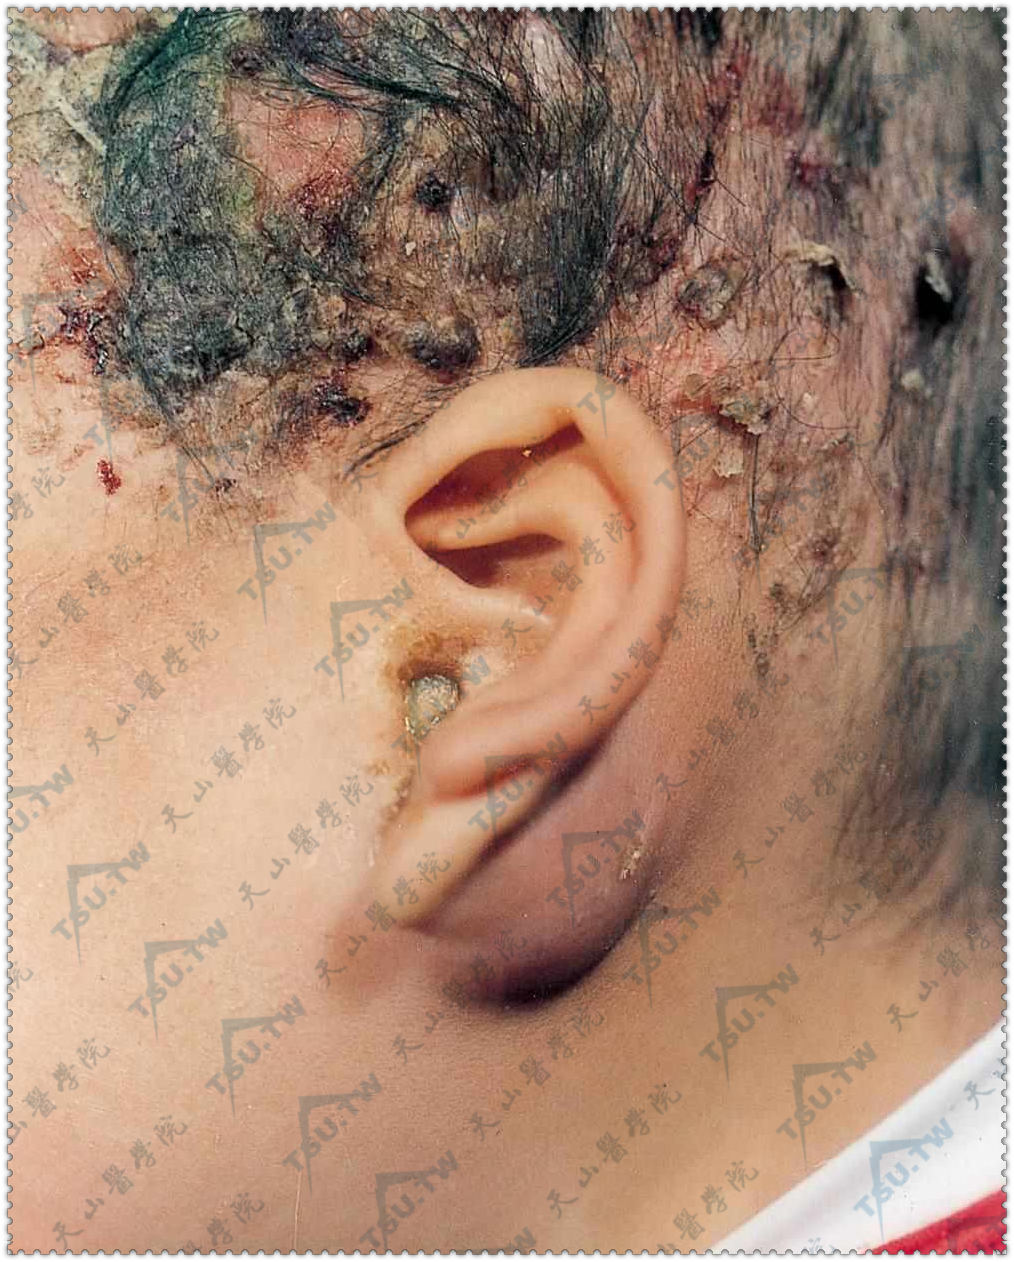 朗格汉斯细胞组织细胞增生症：头部脂溢性皮炎样皮损，左耳后乳突部红肿，外耳道溢脓